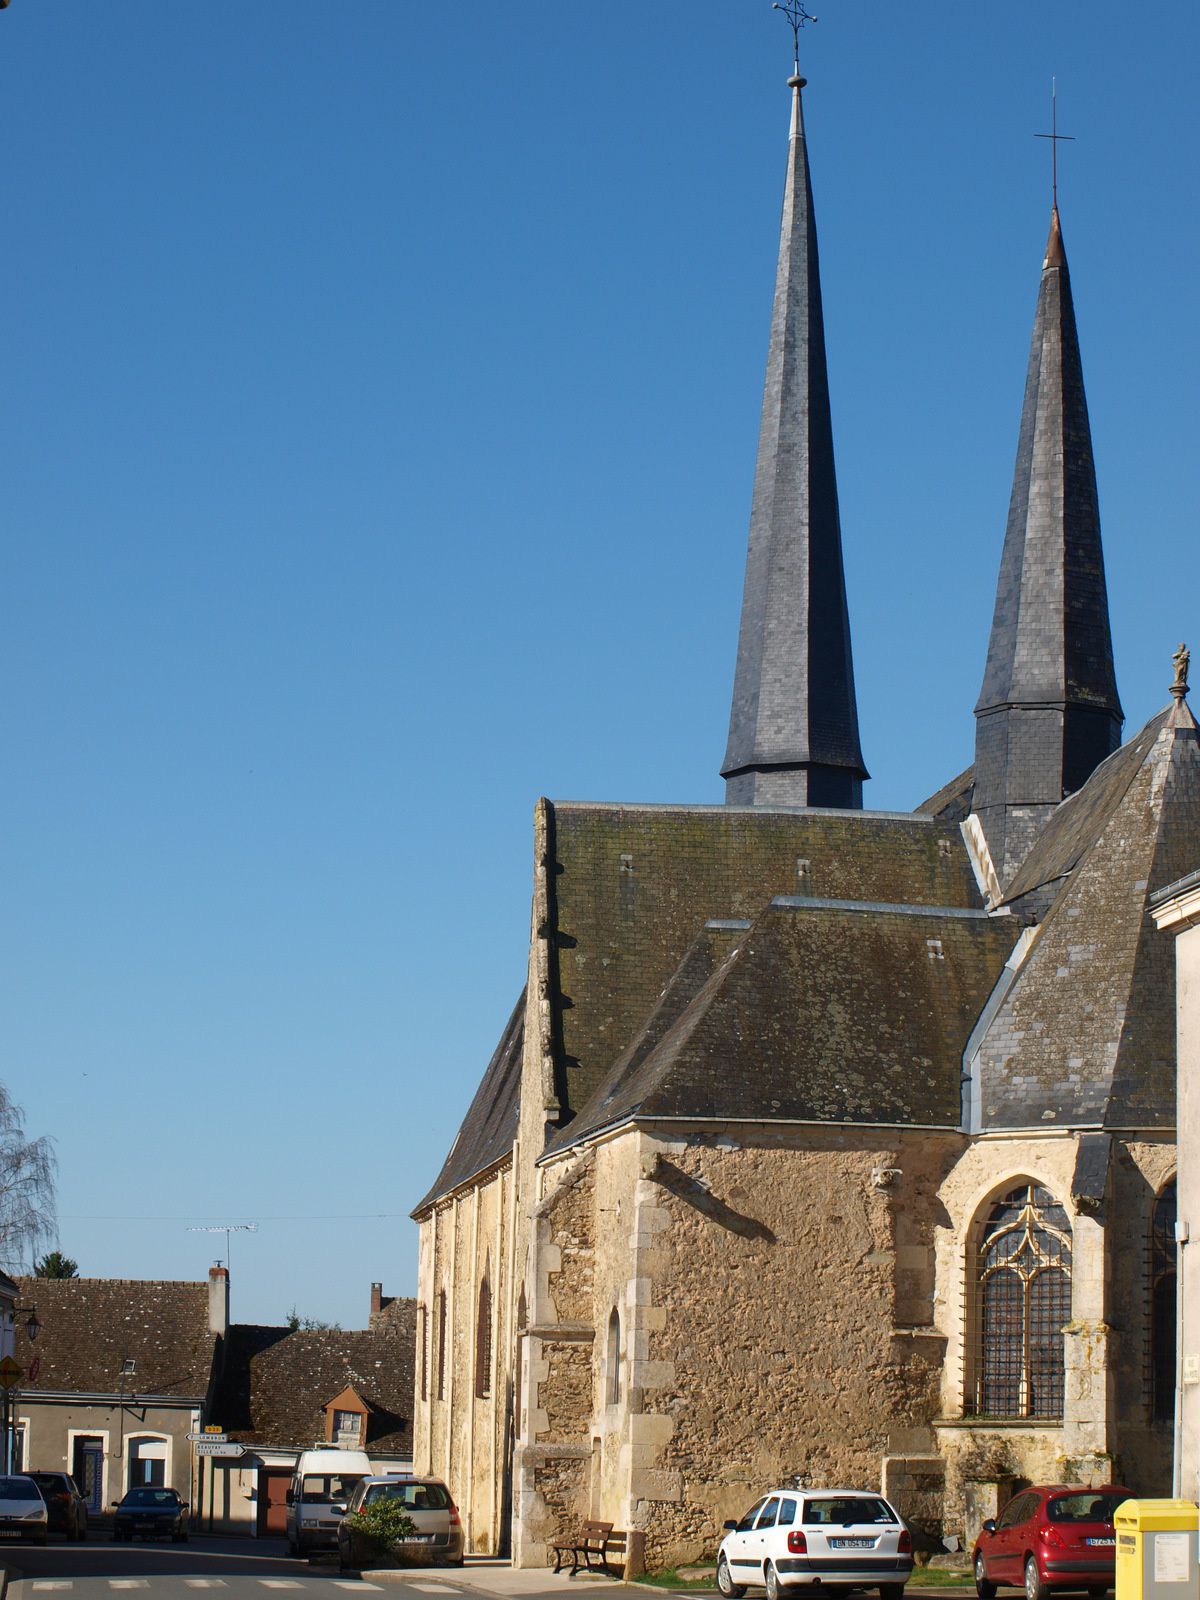 L'église Notre-Dame (XIVè-XVIIIè s.)  et ses 2 clochers nous ouvrait son porche du XIIIè et nous laissait apercevoir ses magnifiques vitraux de 1520